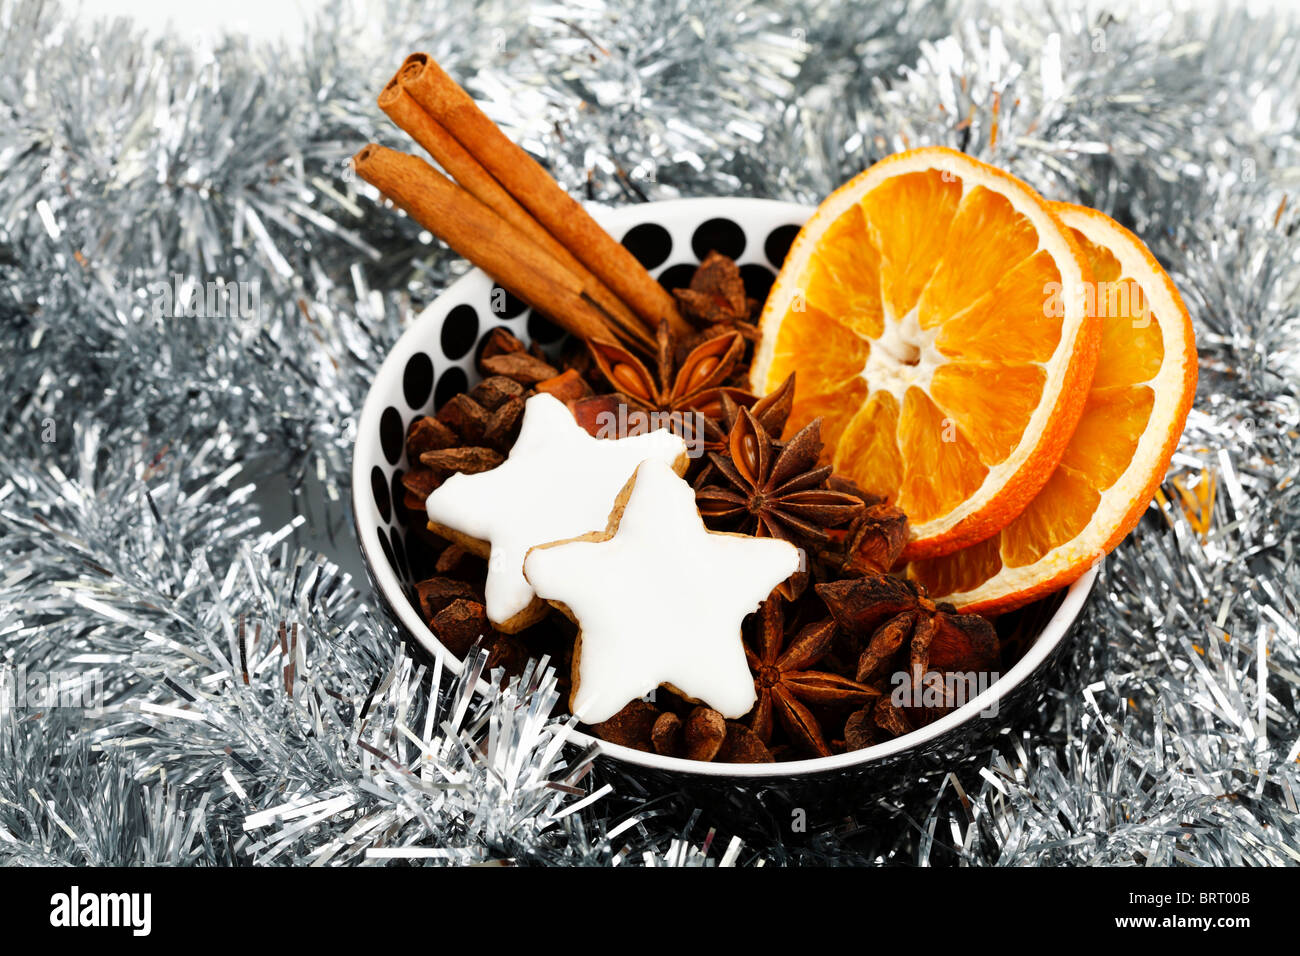 Sternförmige Zimt Kekse mit getrockneten Scheiben Orange, Zimtstangen und Anis Sterne in einer Schüssel mit Weihnachtsschmuck Stockfoto